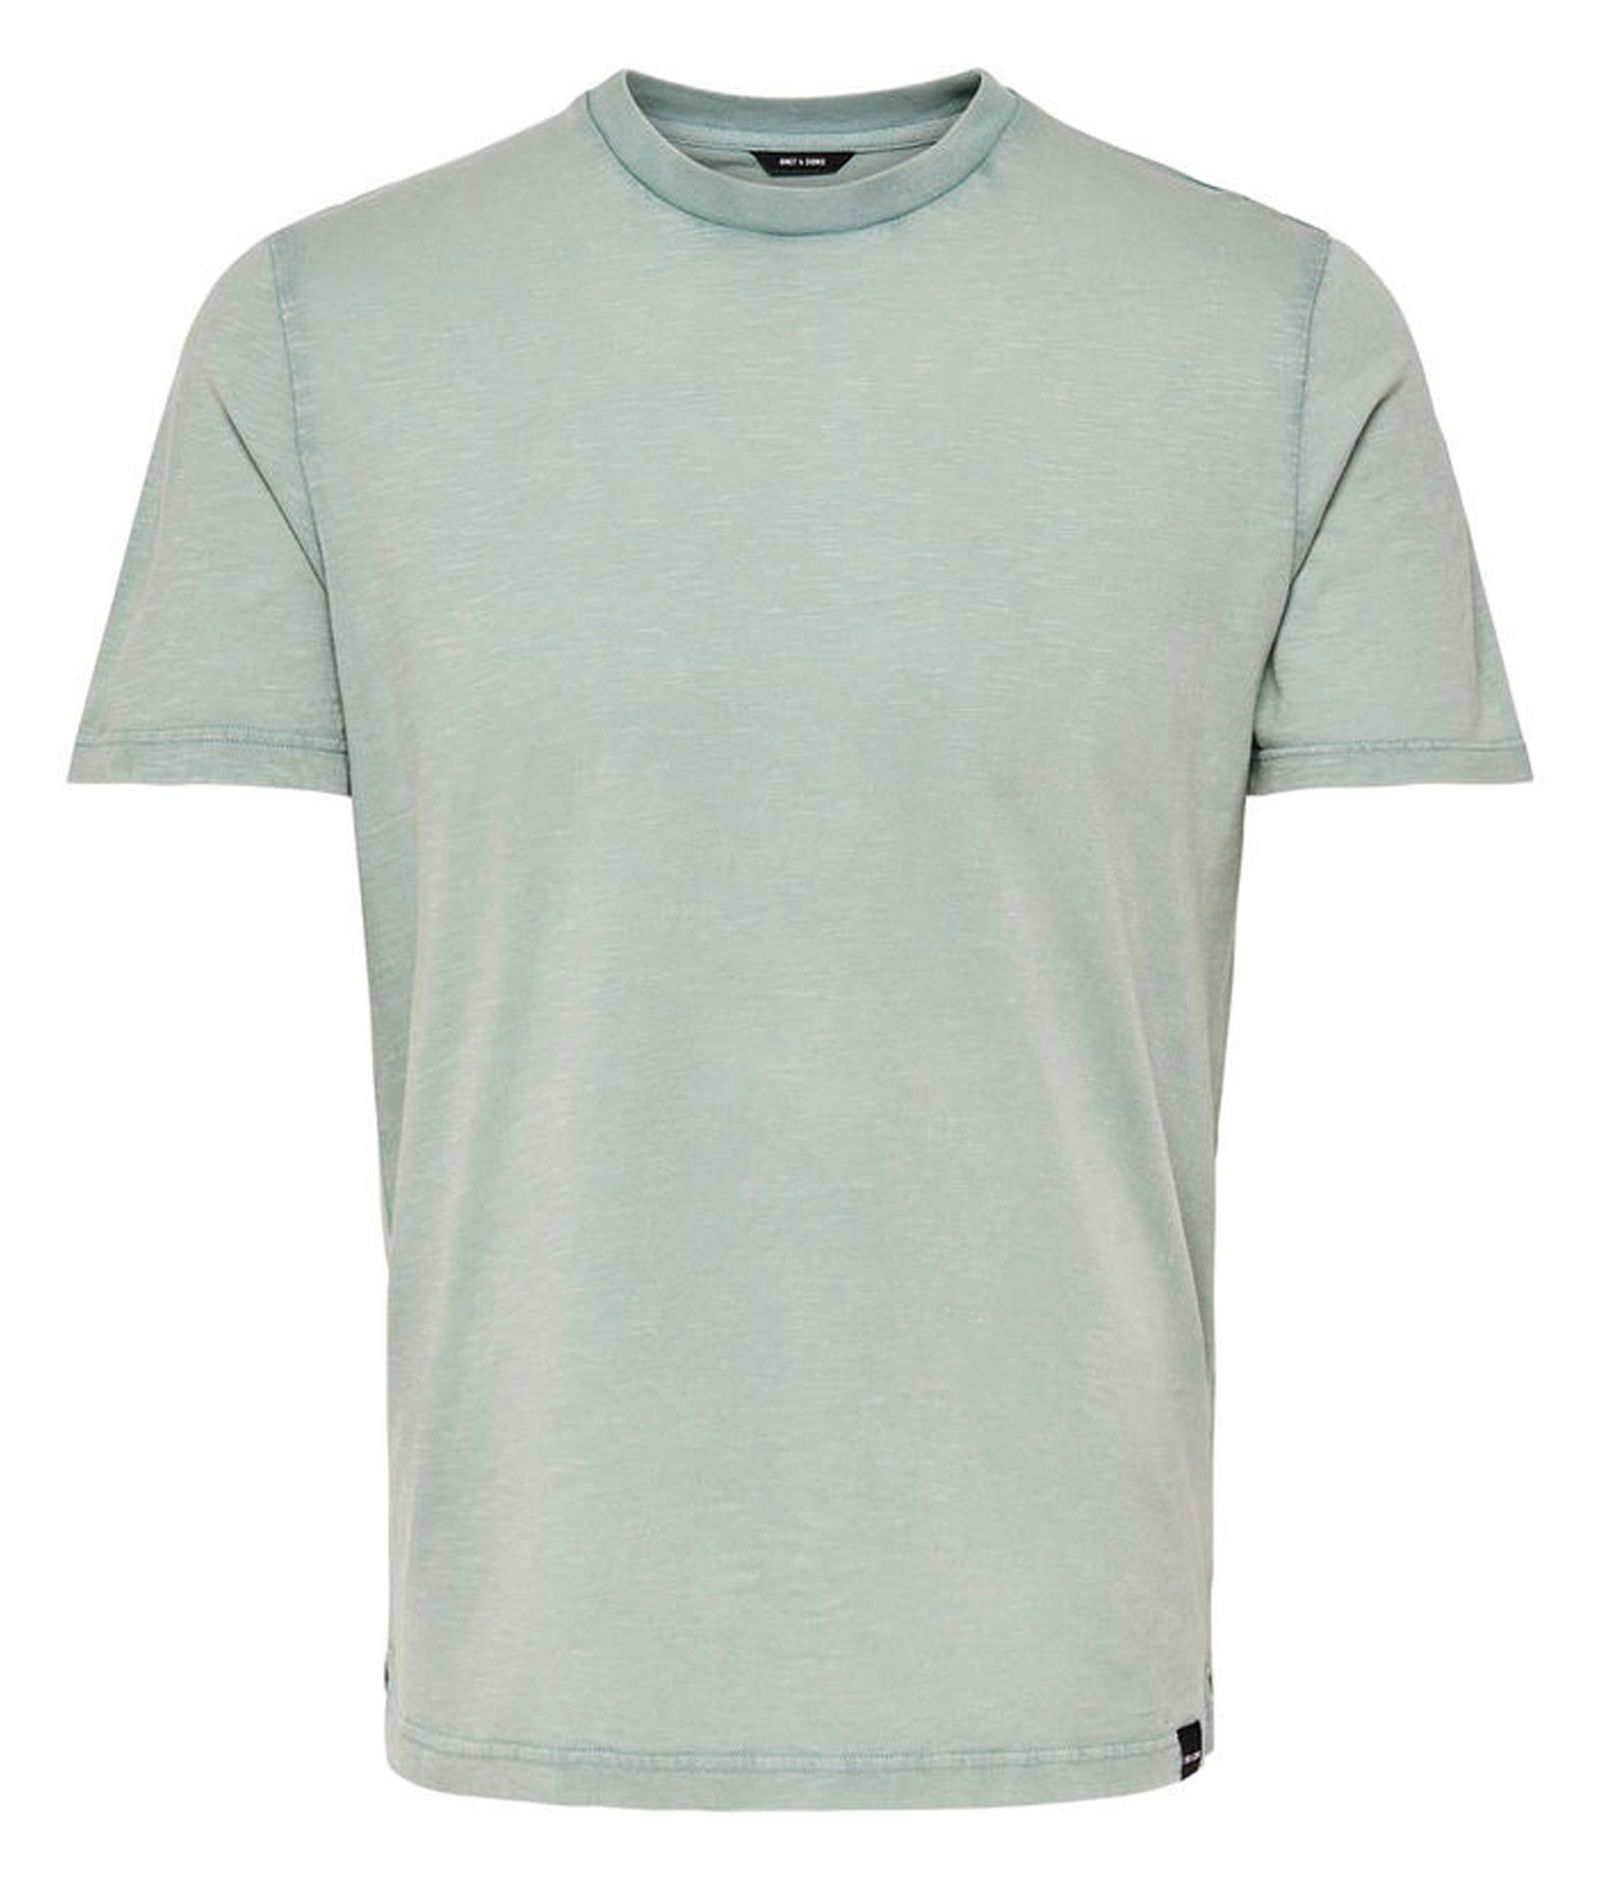 تی شرت نخی یقه گرد مردانه - اونلی اند سانز - سبز روشن - 1